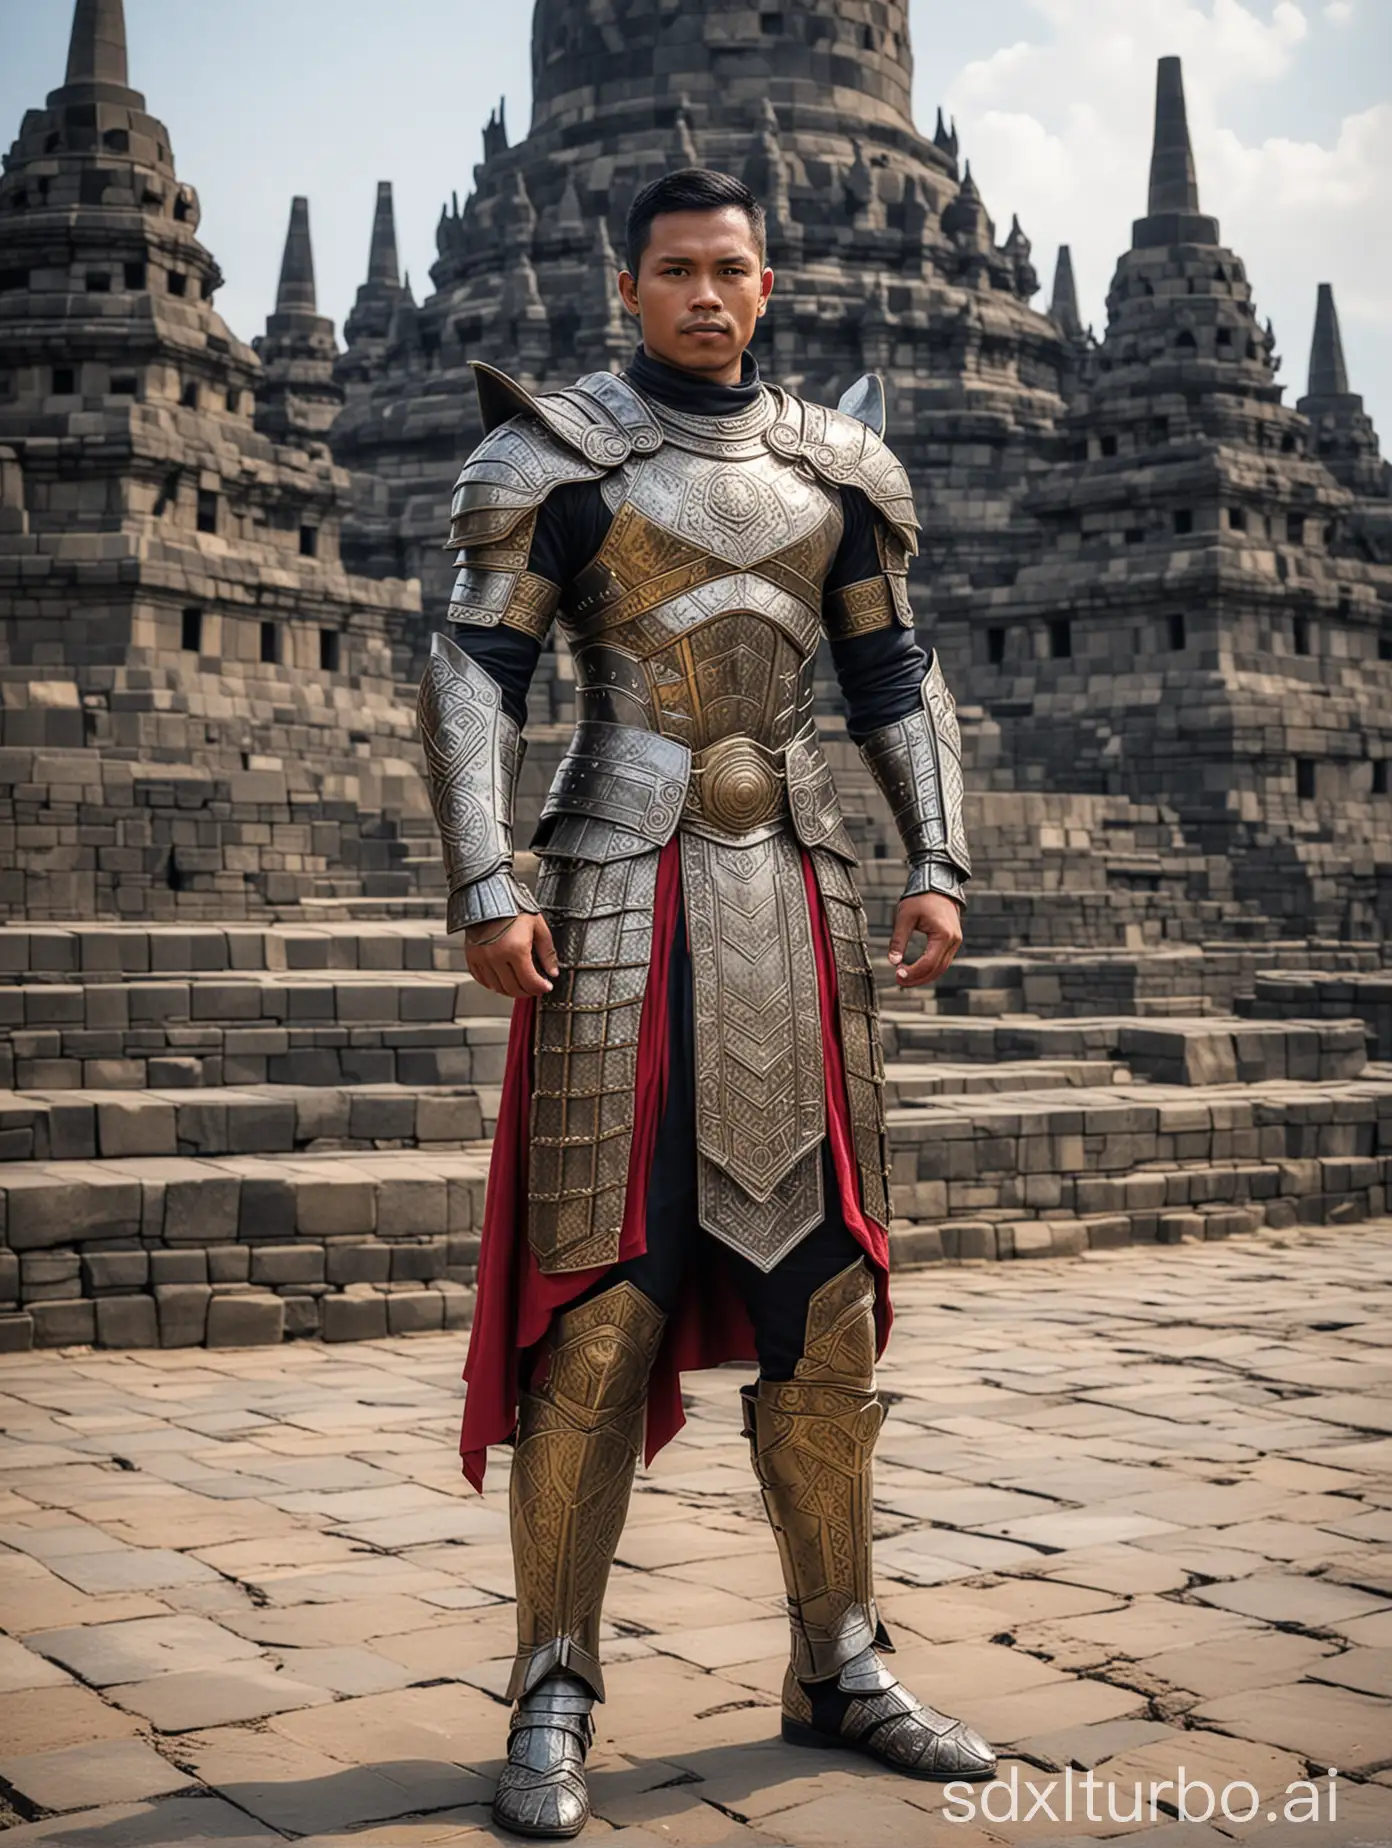 Indonesian-Superhero-in-Armoured-Costume-at-Borobudur-Temple